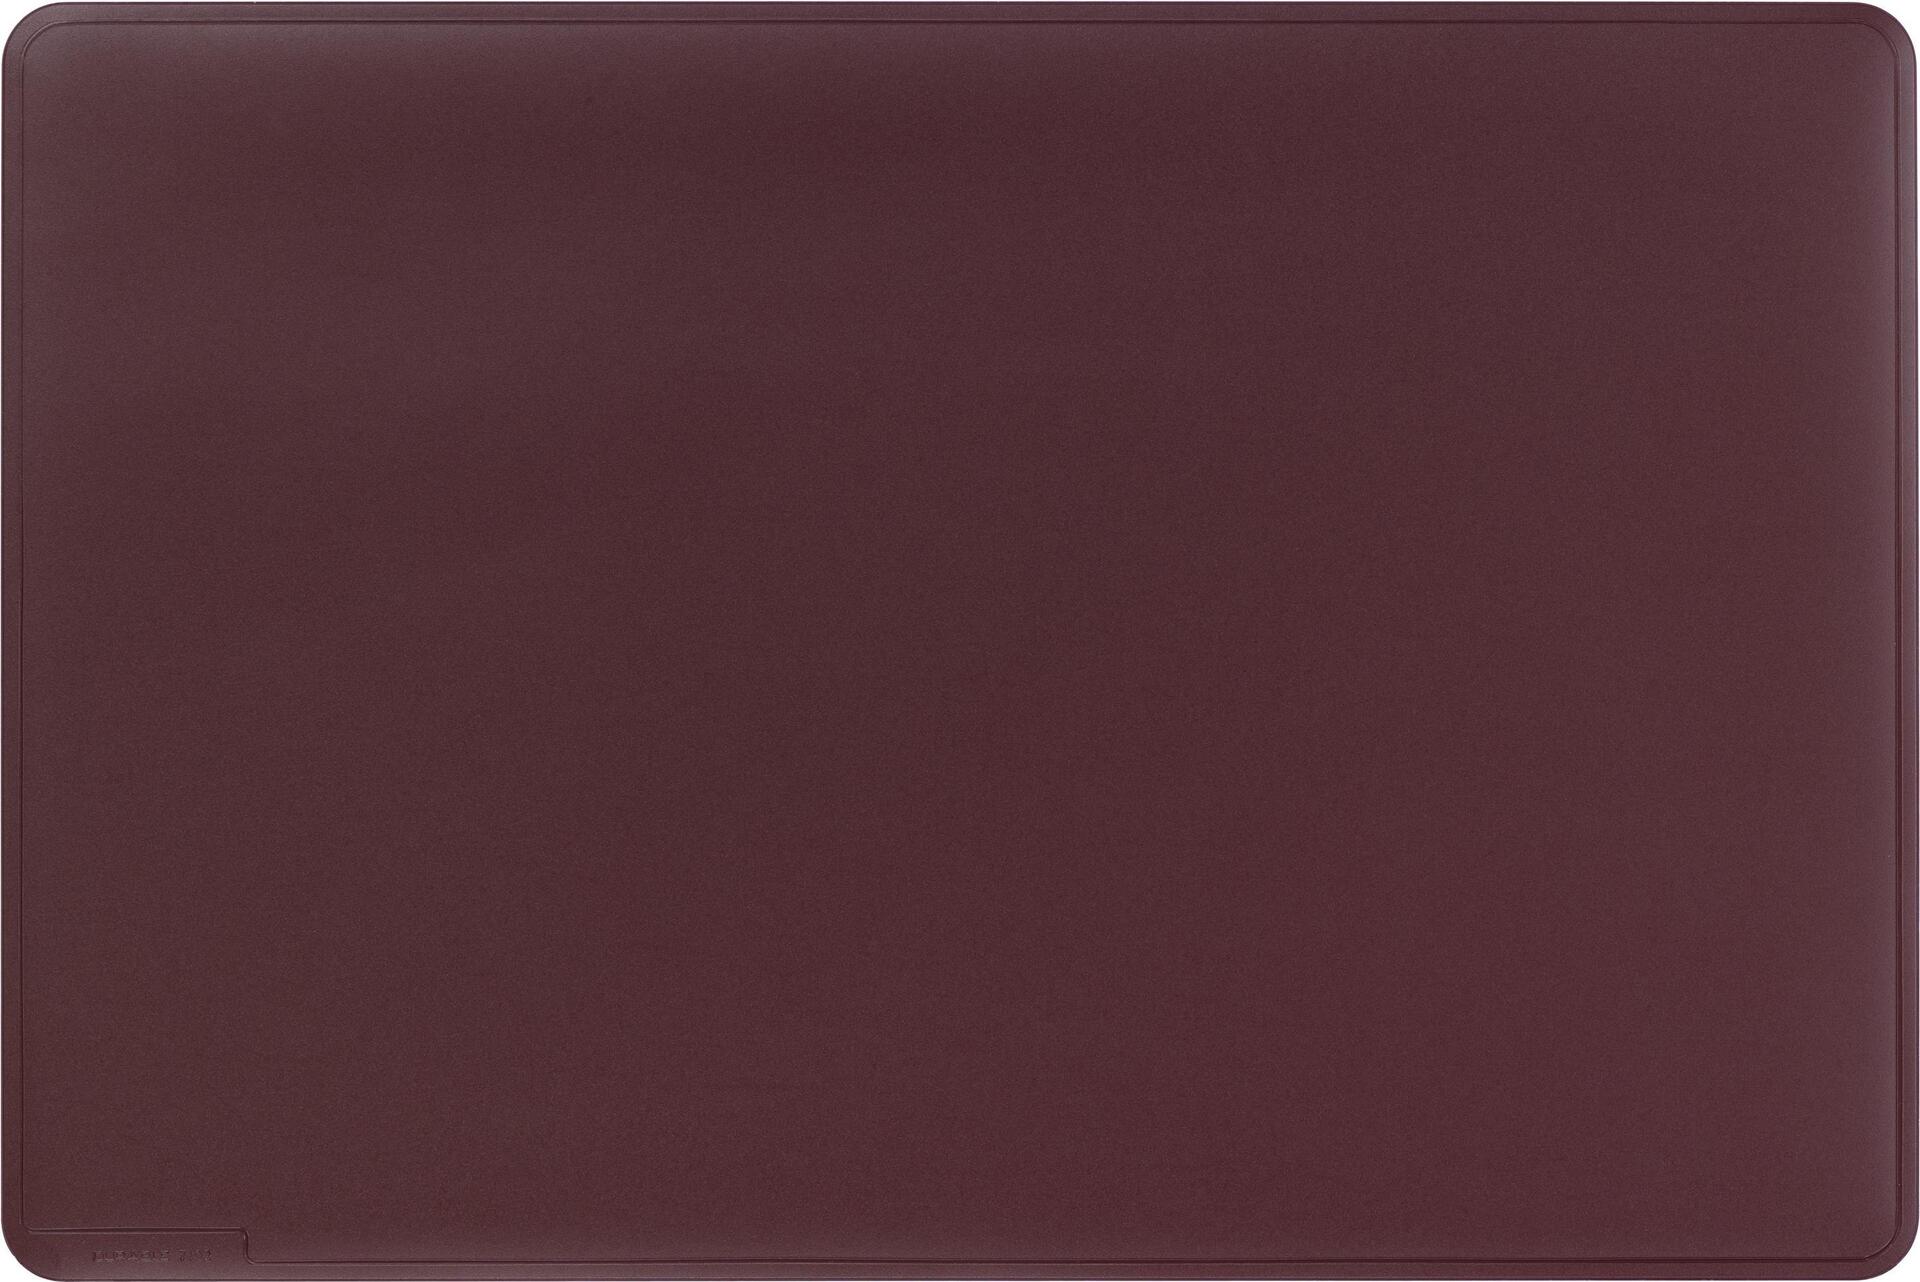 DURABLE Schreibunterlage, 530 x 400 mm, rot rutschfest, elastisch, zeitloses Design, mit Dekorille (